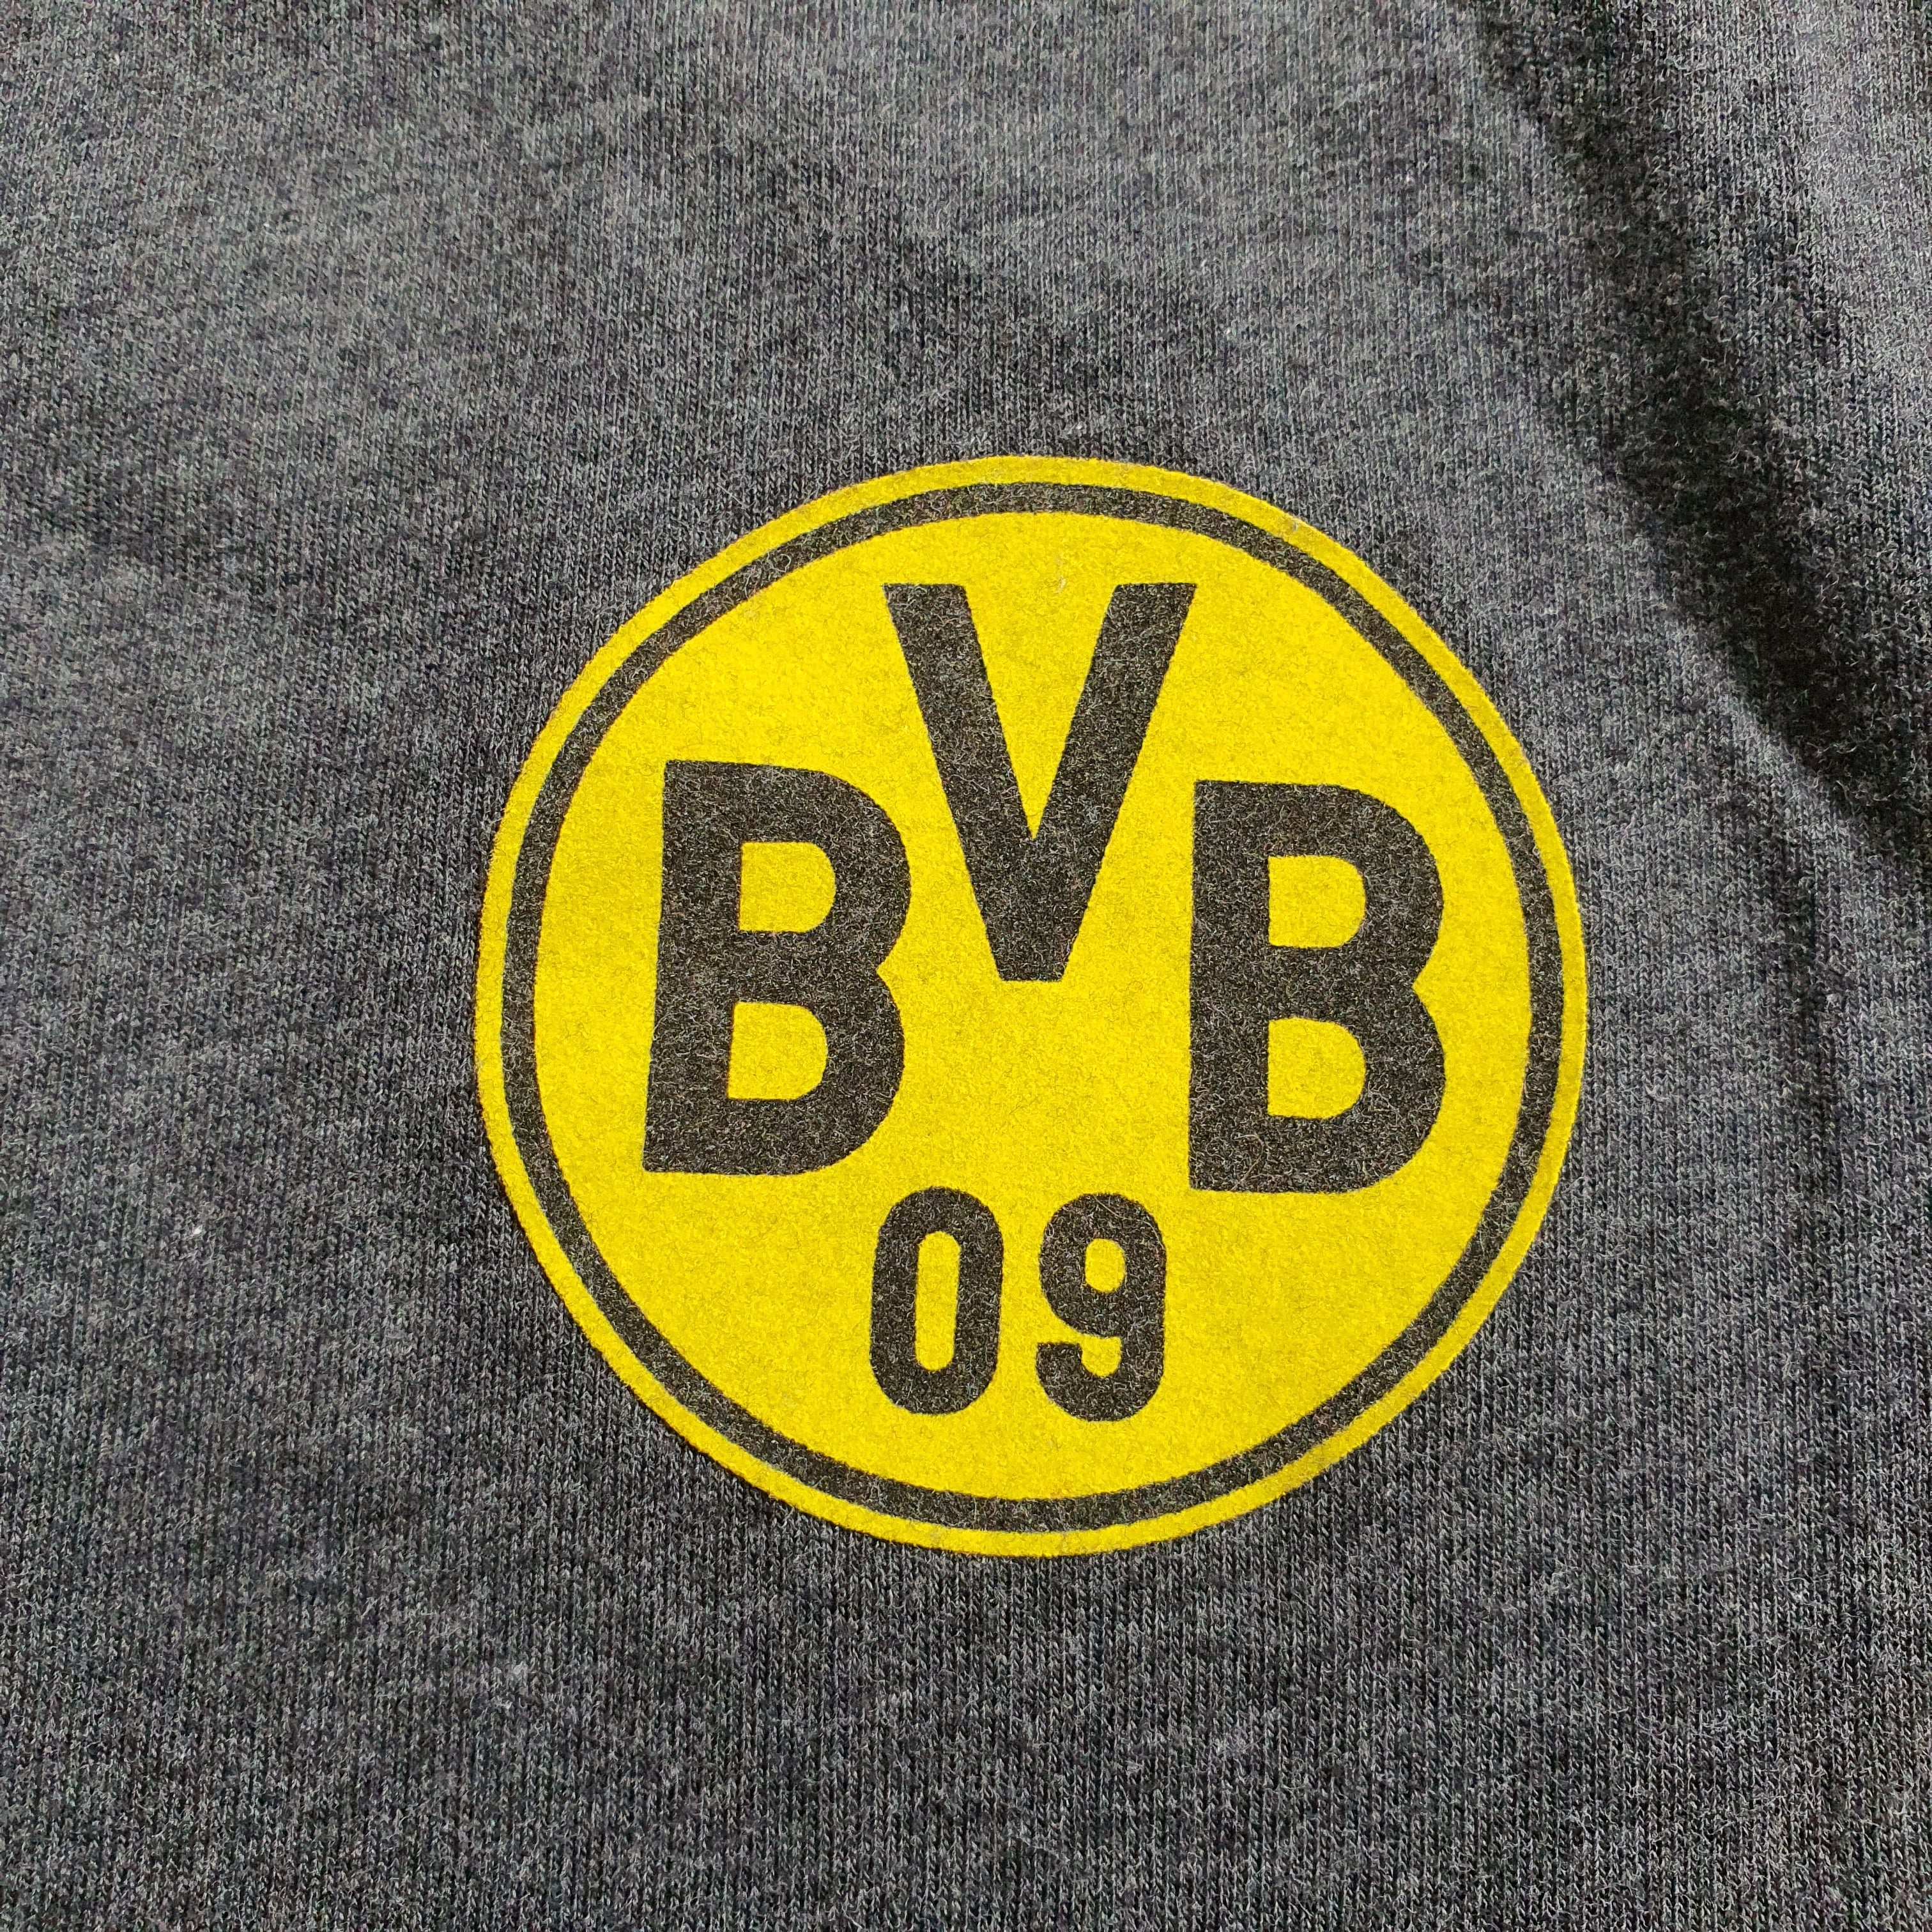 [M] BVB Puma T-Shirt